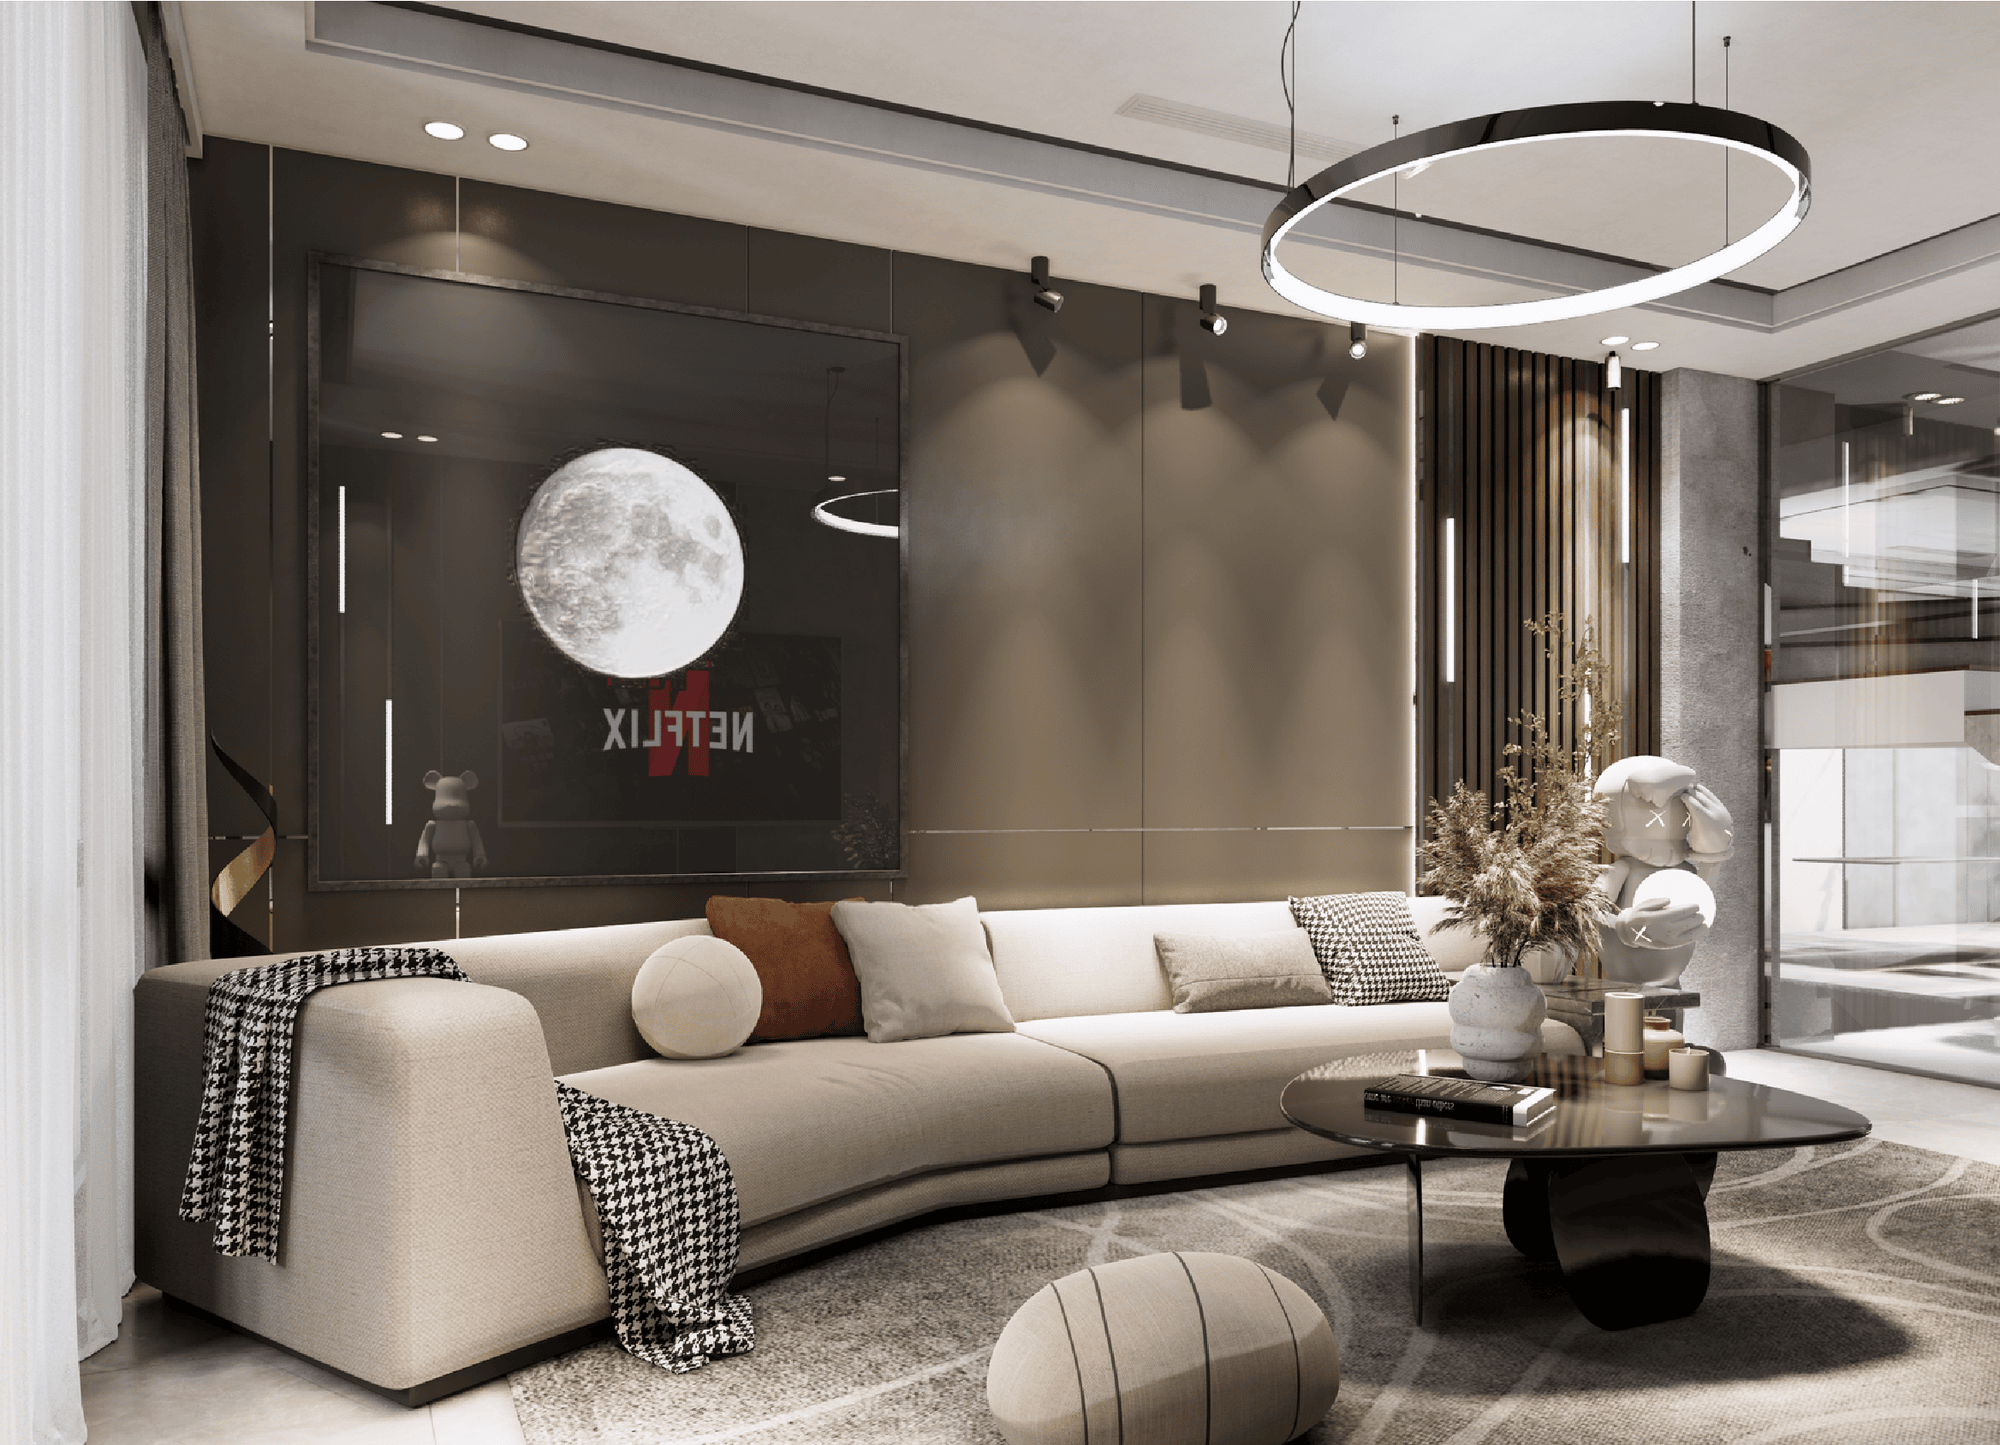 Living room 3D Design of Hieu Huong's House Interior design modern style | NTDecor